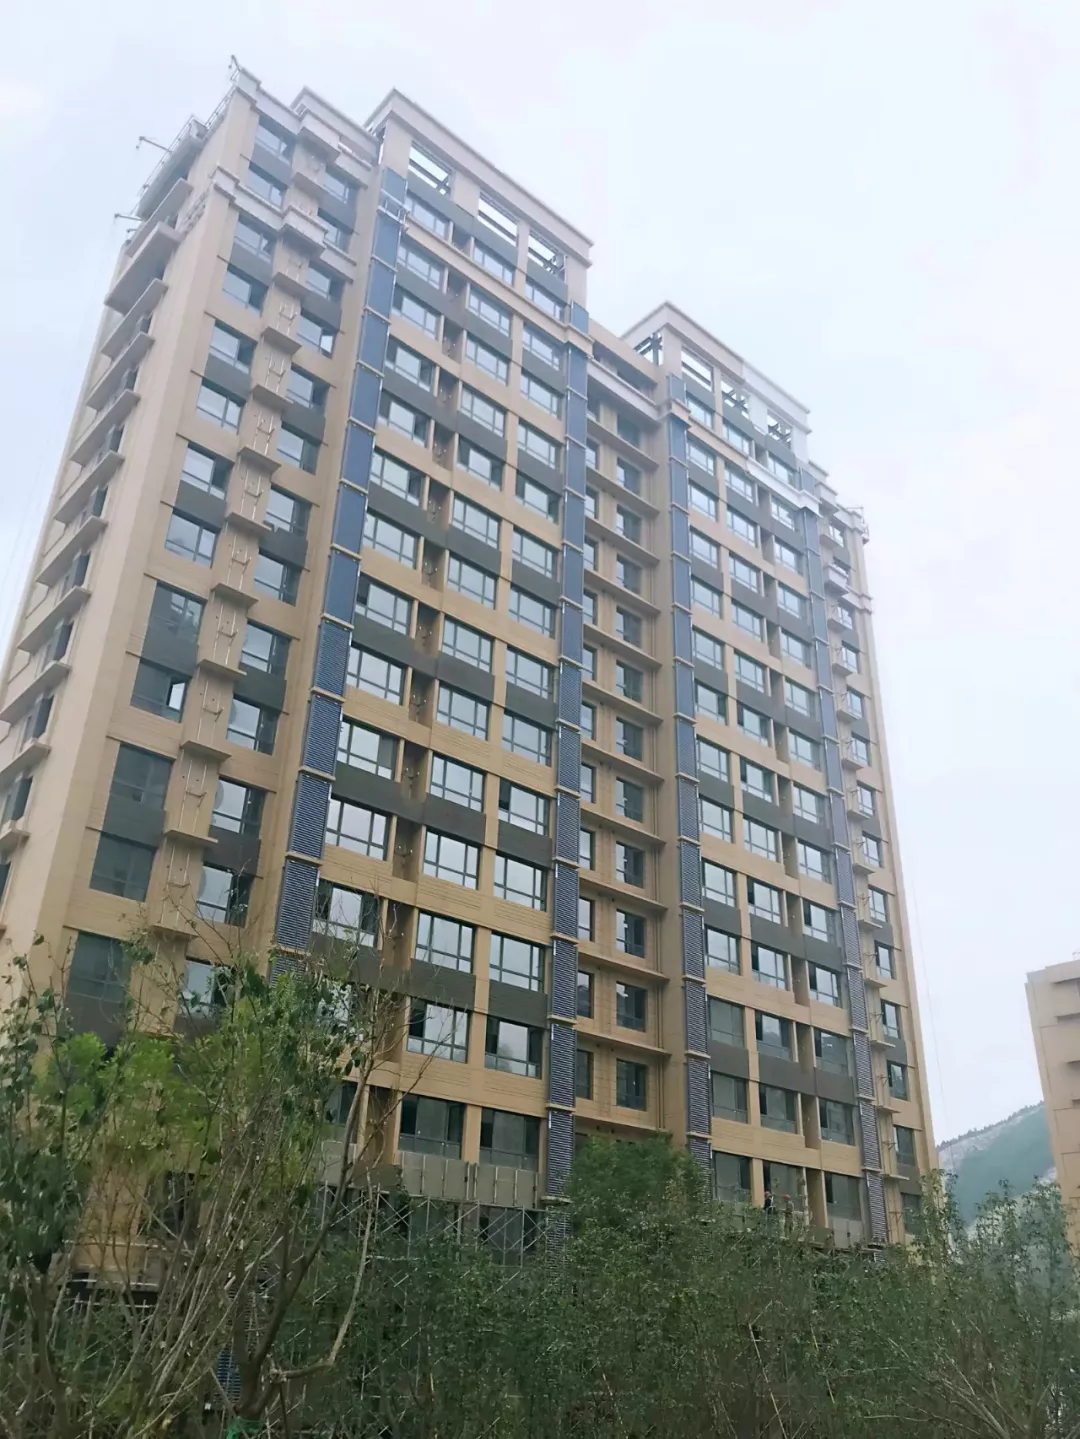 力诺瑞特蝉联 “中国房地产企业500强首选供应商”